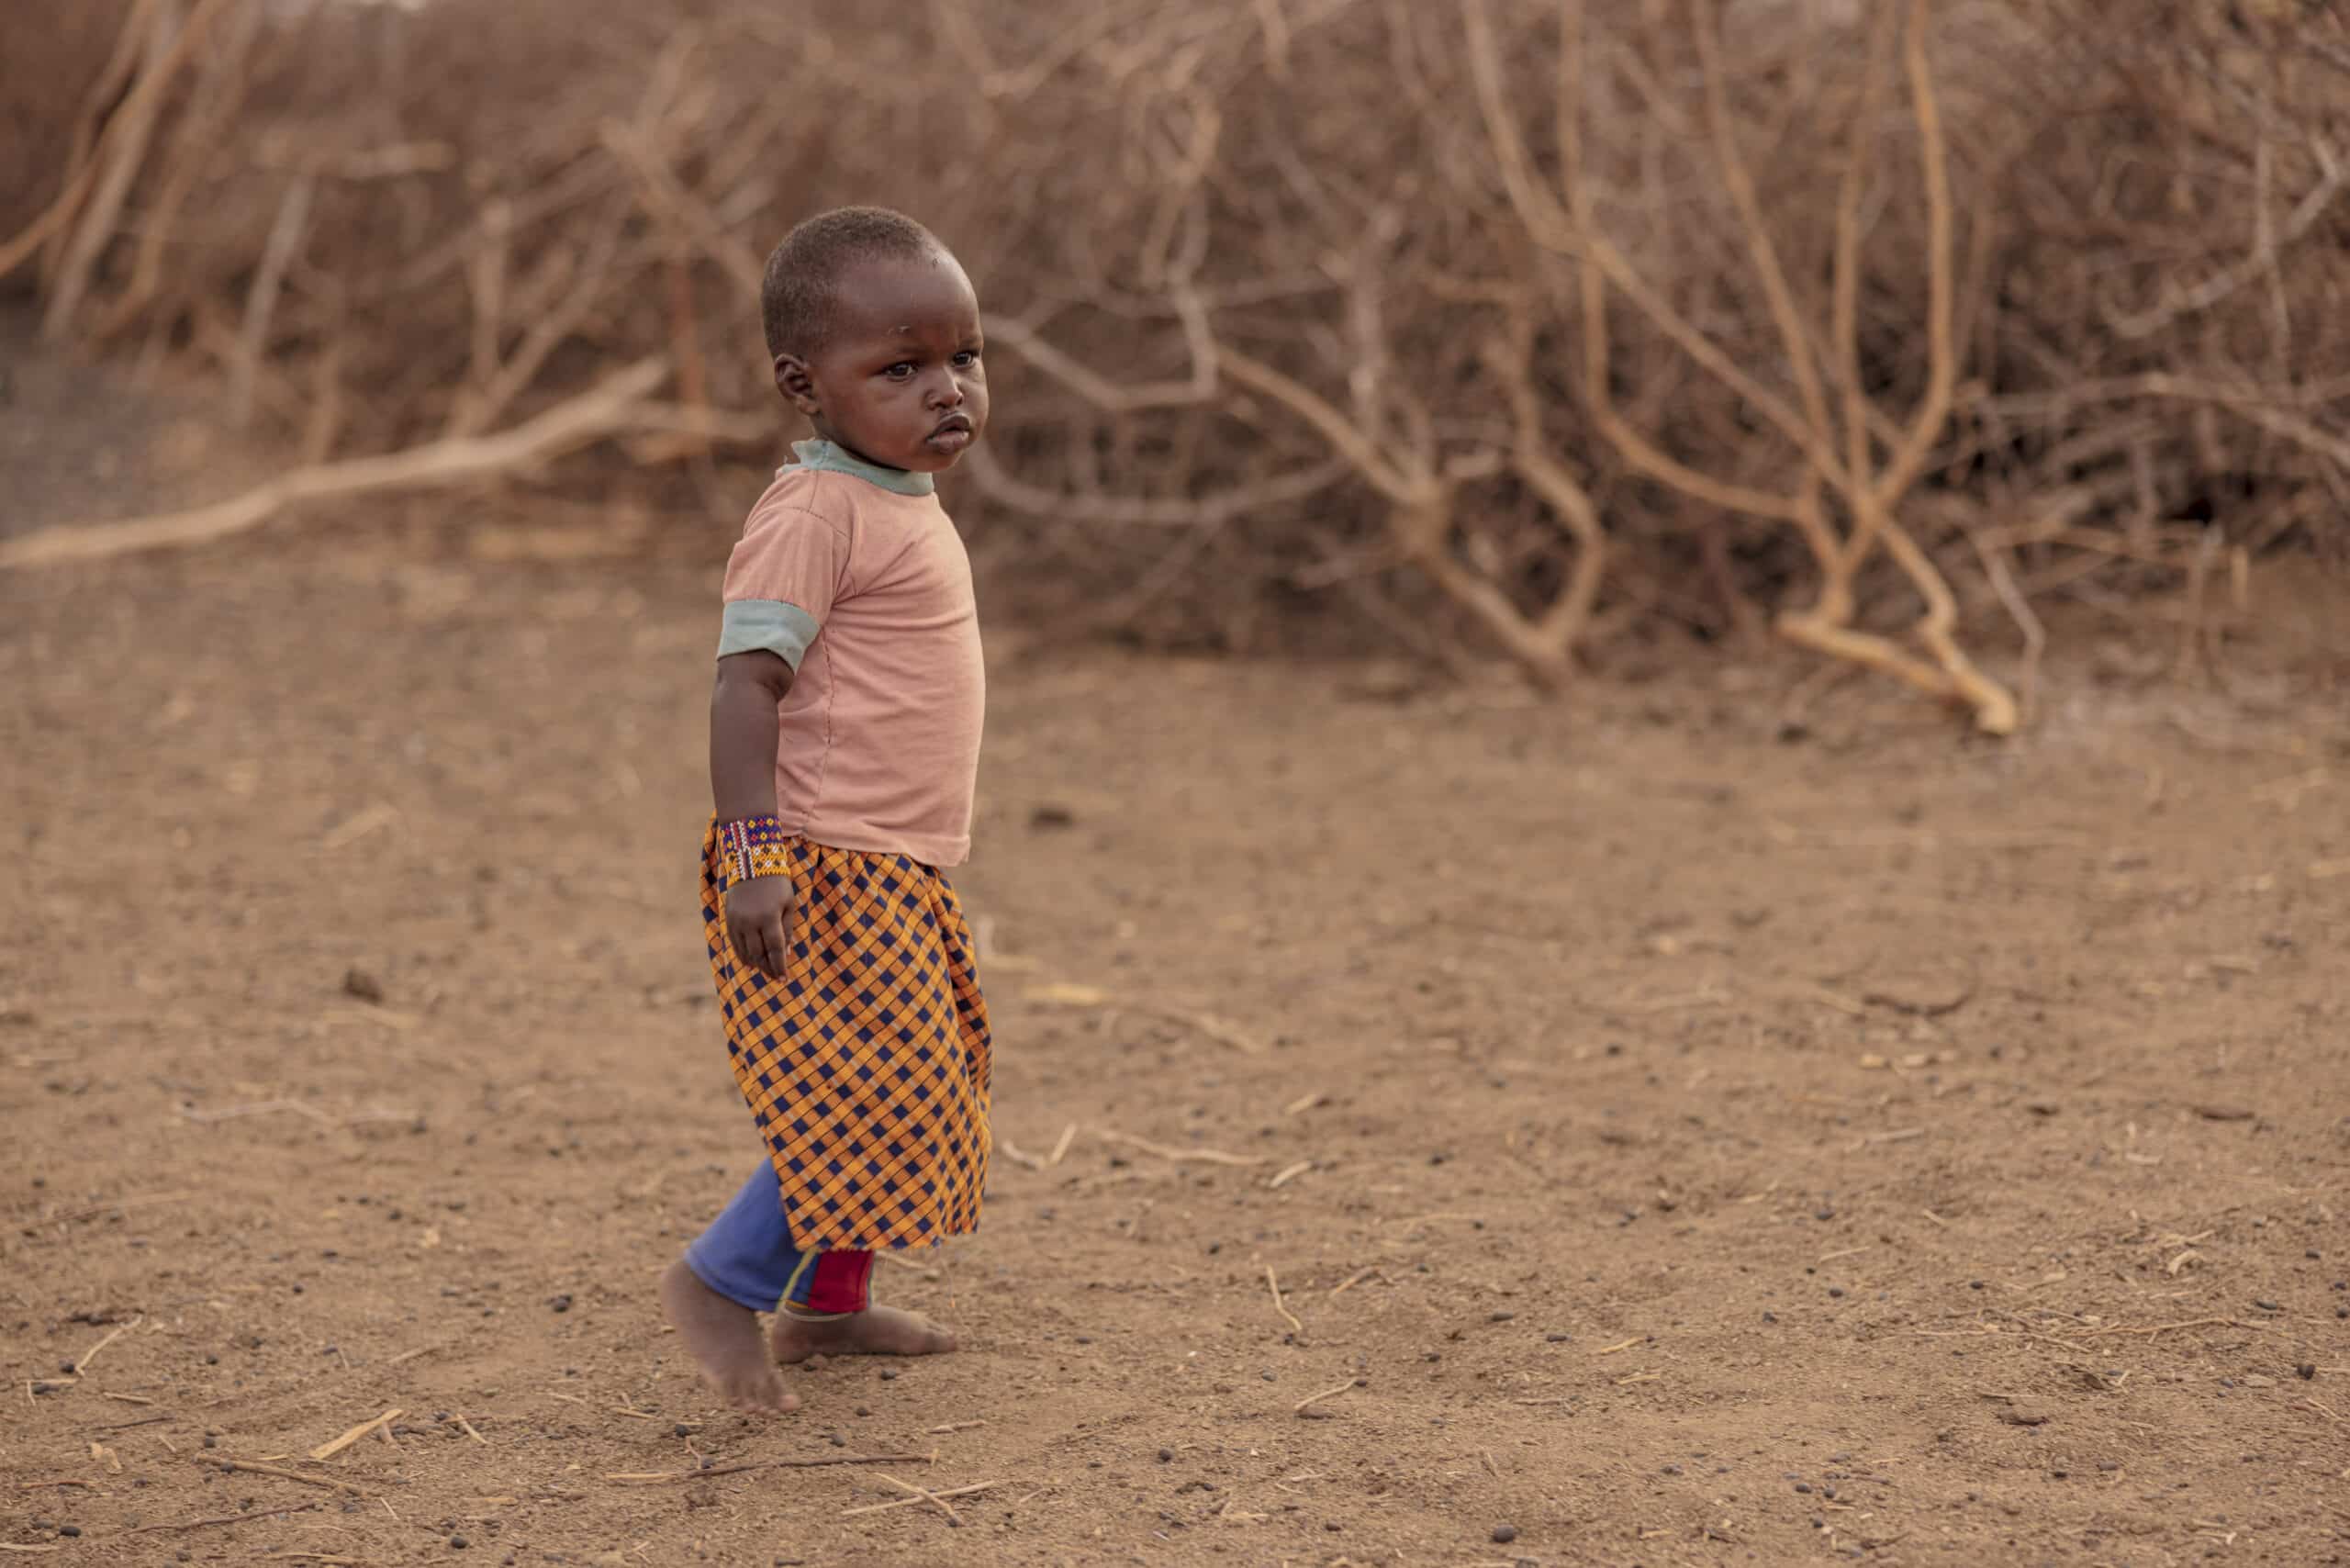 Ein kleines Kind steht in einer kargen Landschaft. Es trägt ein pfirsichfarbenes T-Shirt und einen gemusterten Rock. Im Hintergrund sind spärliche Vegetation und trockener Boden zu sehen. © Fotografie Tomas Rodriguez